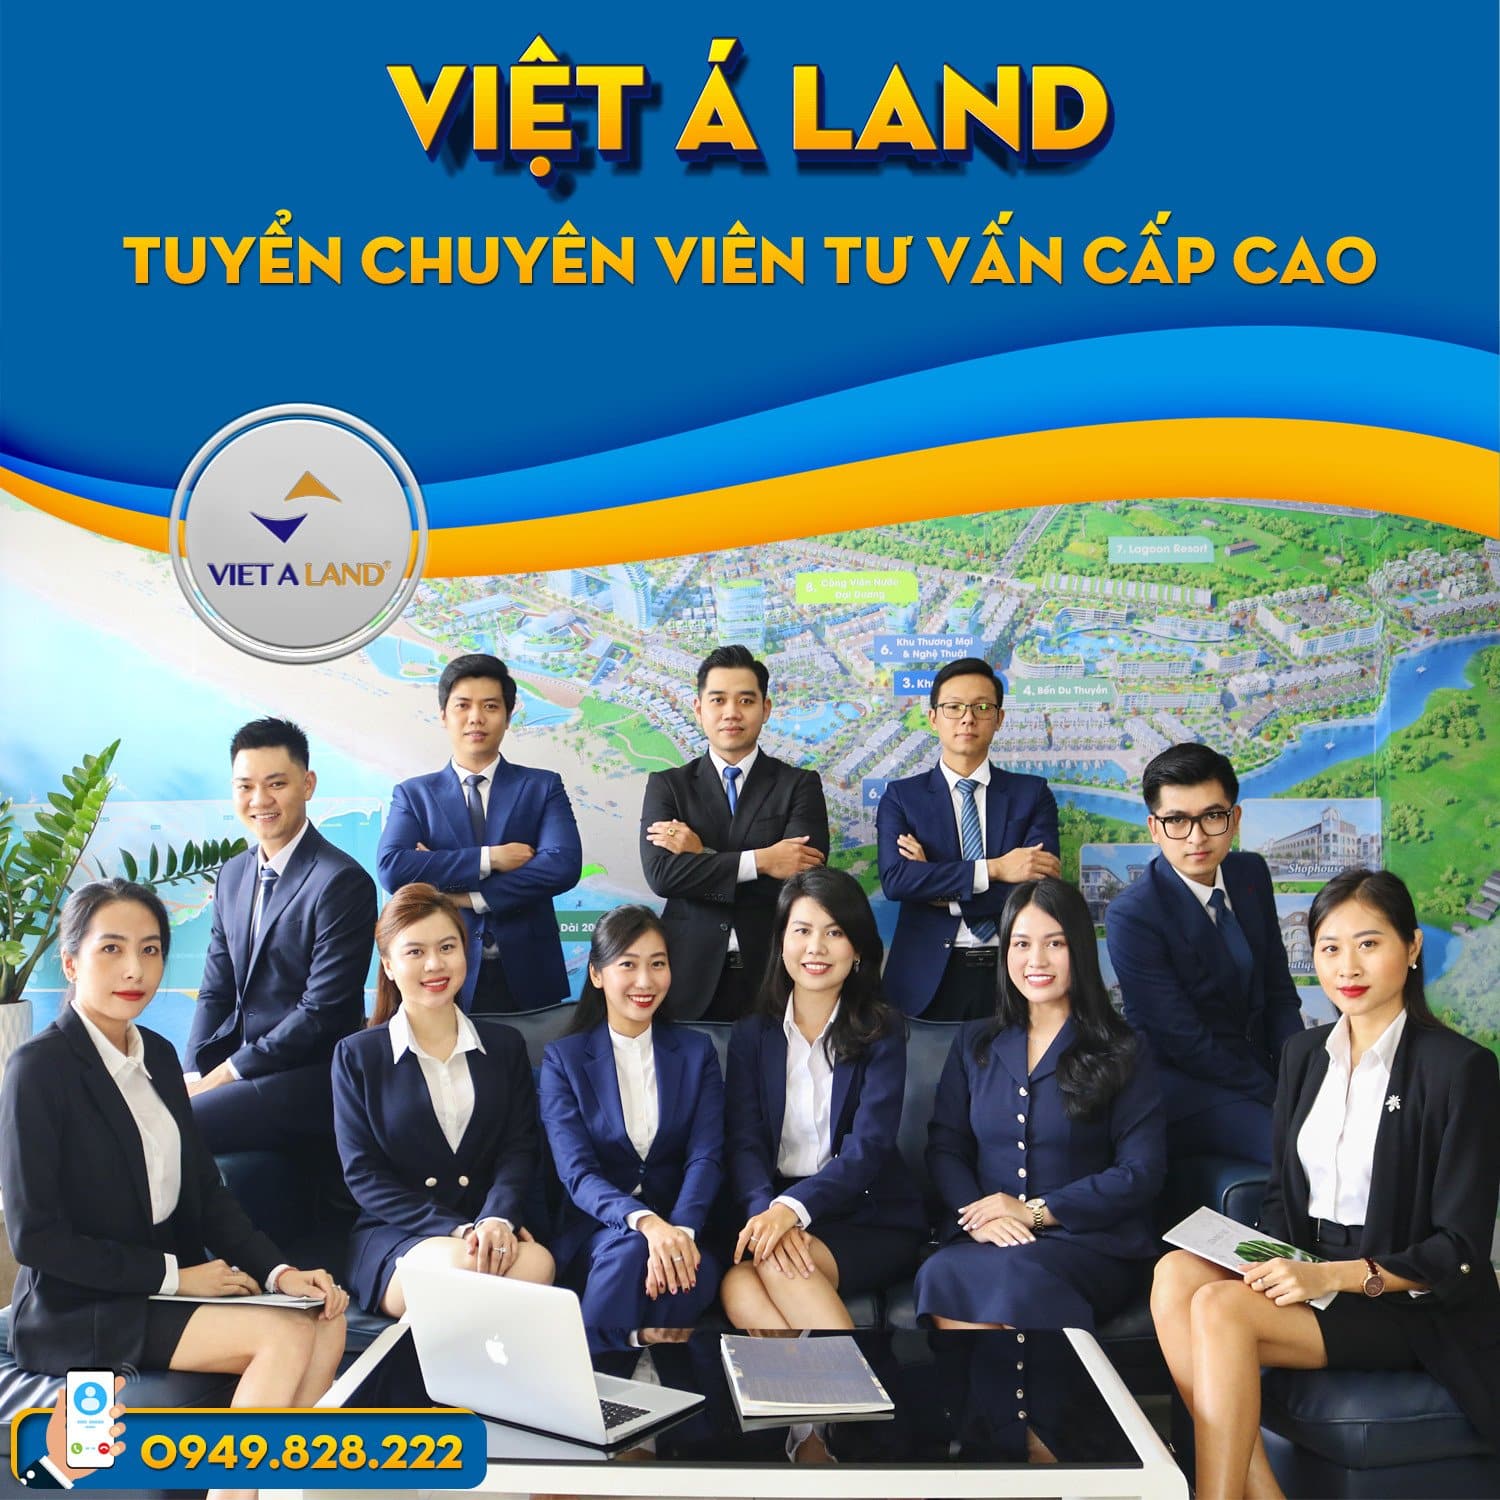 Việt Á Land tuyển dụng nhân viên sale bds quận 2